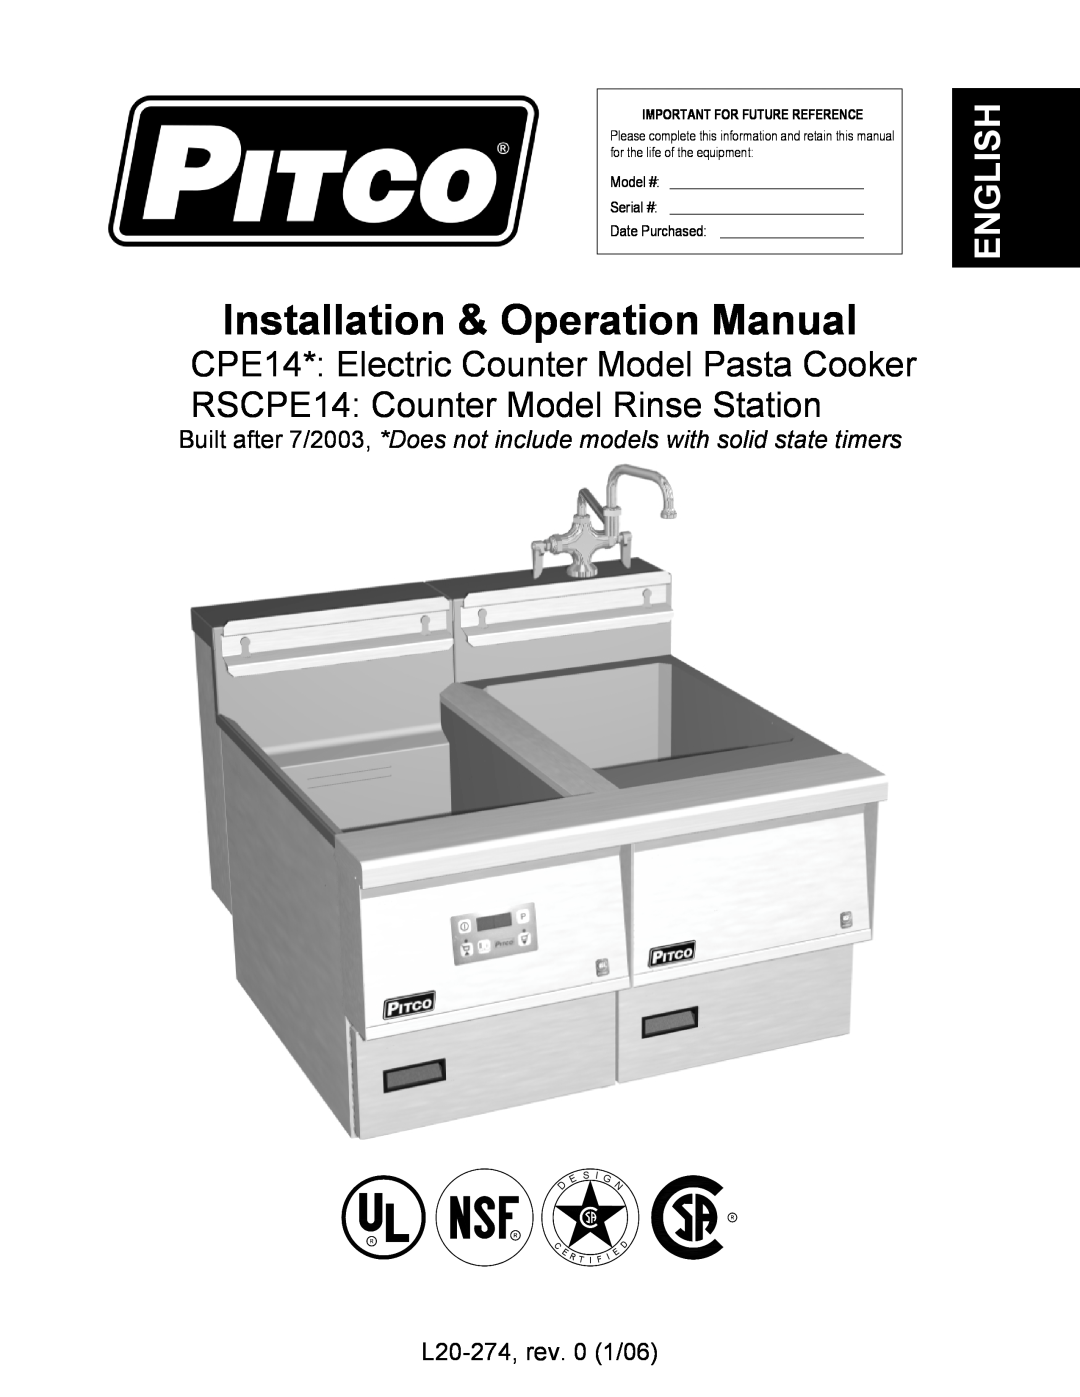 Pitco Frialator RSCPE14 operation manual L20-274,rev. 0 1/06, CPE14* Electric Counter Model Pasta Cooker, English, Model # 